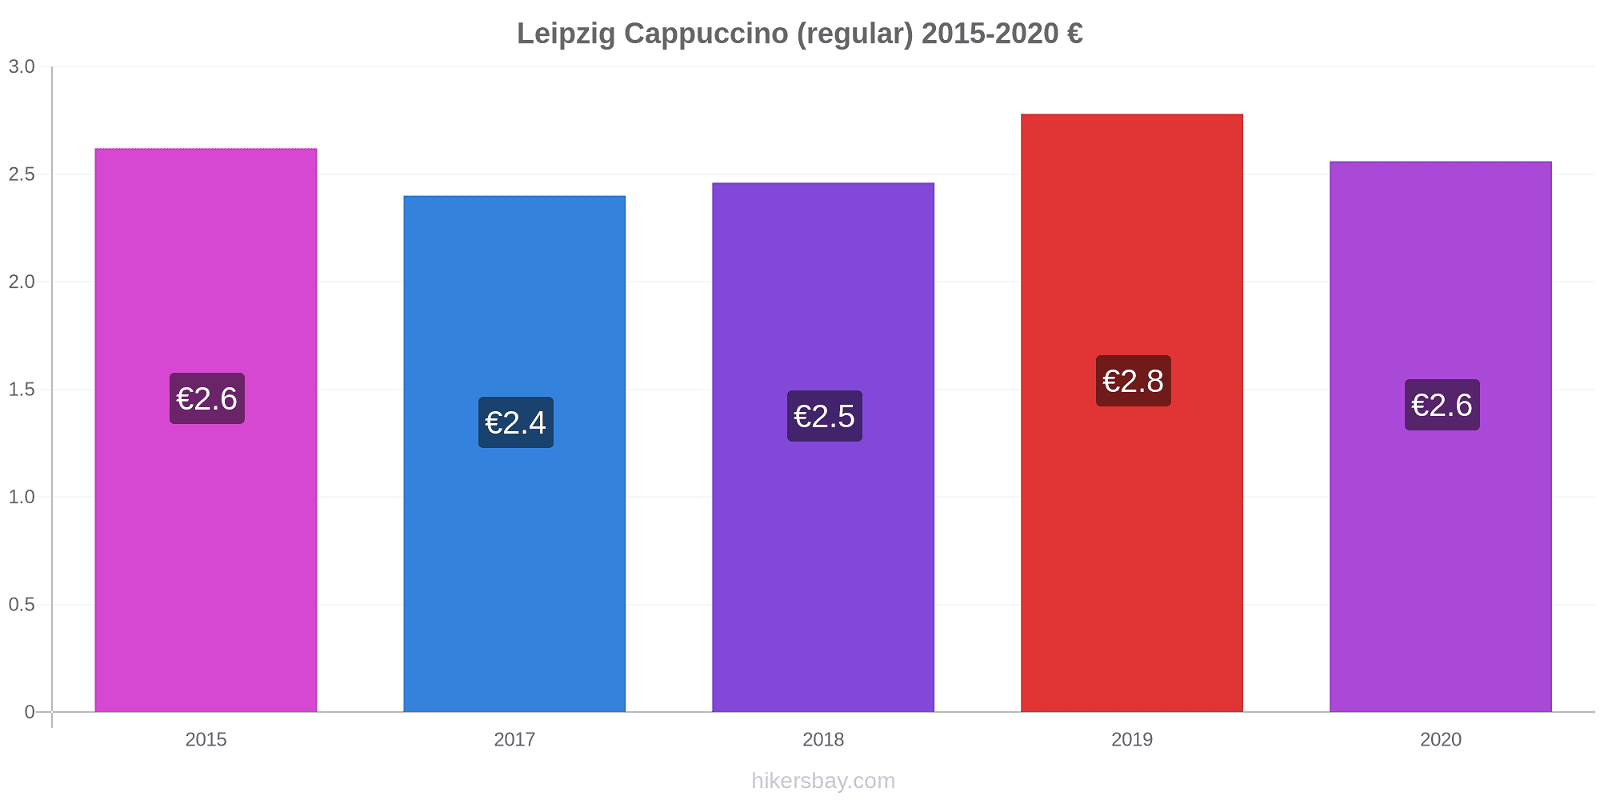 Leipzig price changes Cappuccino (regular) hikersbay.com